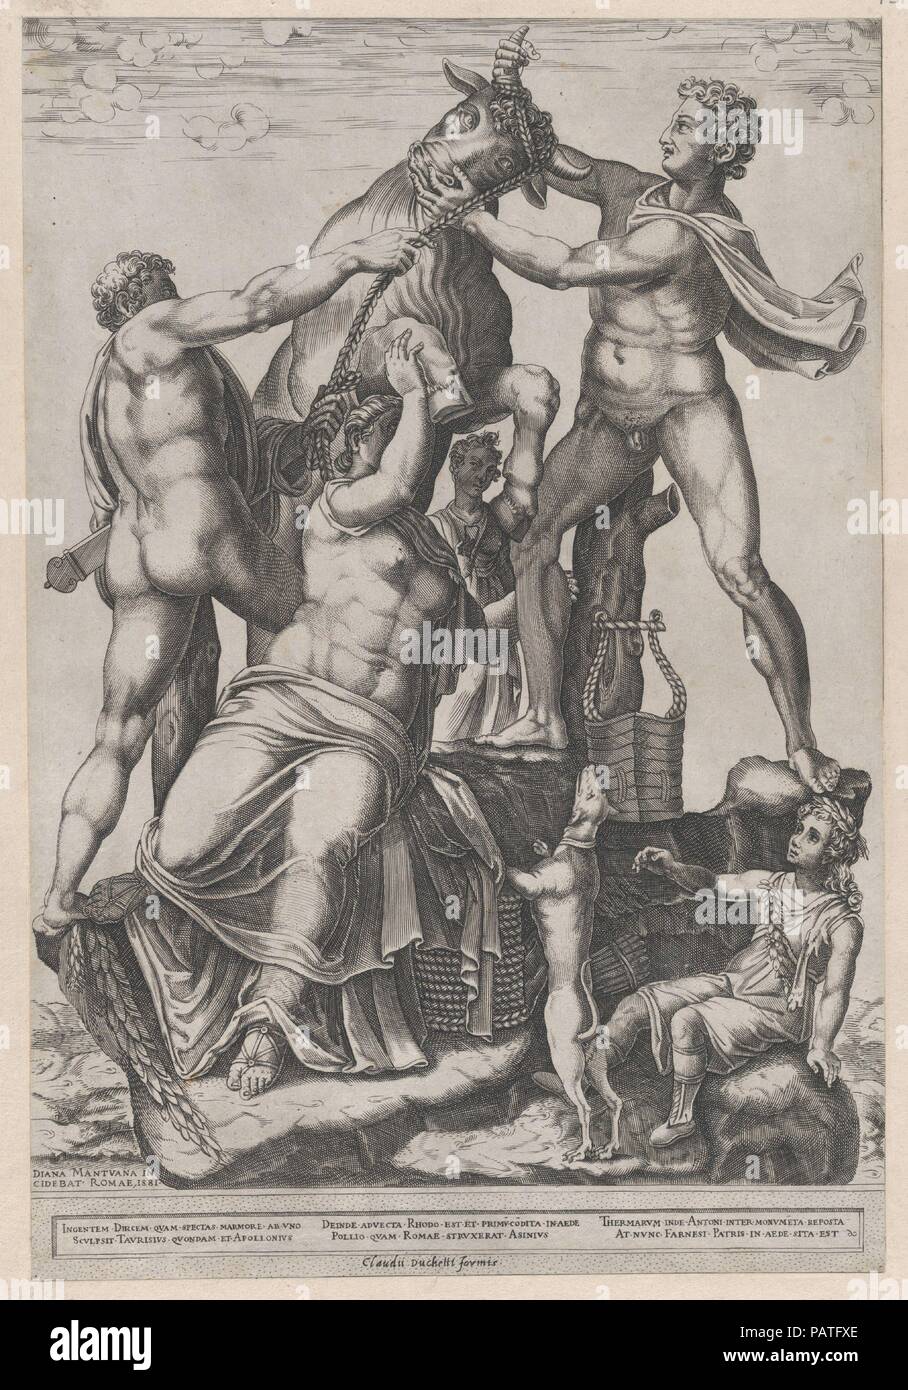 Speculum romanae Magnificentiae: Amphion und Zethus binden Dirce zu einem wilden Stier [Der Farnese Stier]. Artist: Diana Scultori (Italienisch, Mantua Ca. 1535?-nach 1588 Rom). Maße: Blatt: 18 1/8 x 13 9/16 in. (46 x 34,4 cm): 15 1/2 x 10 1/2 in. (39,4 x 26,6 cm). Herausgeber: Claudio Duchetti (Italienisch, aktive Venedig und Rom, Ca. 1565 - starb. 1585). Serie/Portfolio: Speculum romanae Magnificentiae. Datum: 1581. Dieser Ausdruck stammt aus der Kopie für das Museum von Speculum romanae Magnificentiae (Der Spiegel der Römischen Pracht) Das Speculum seinen Ursprung im Verlags- Bemühungen von Antoni gefunden Stockfoto